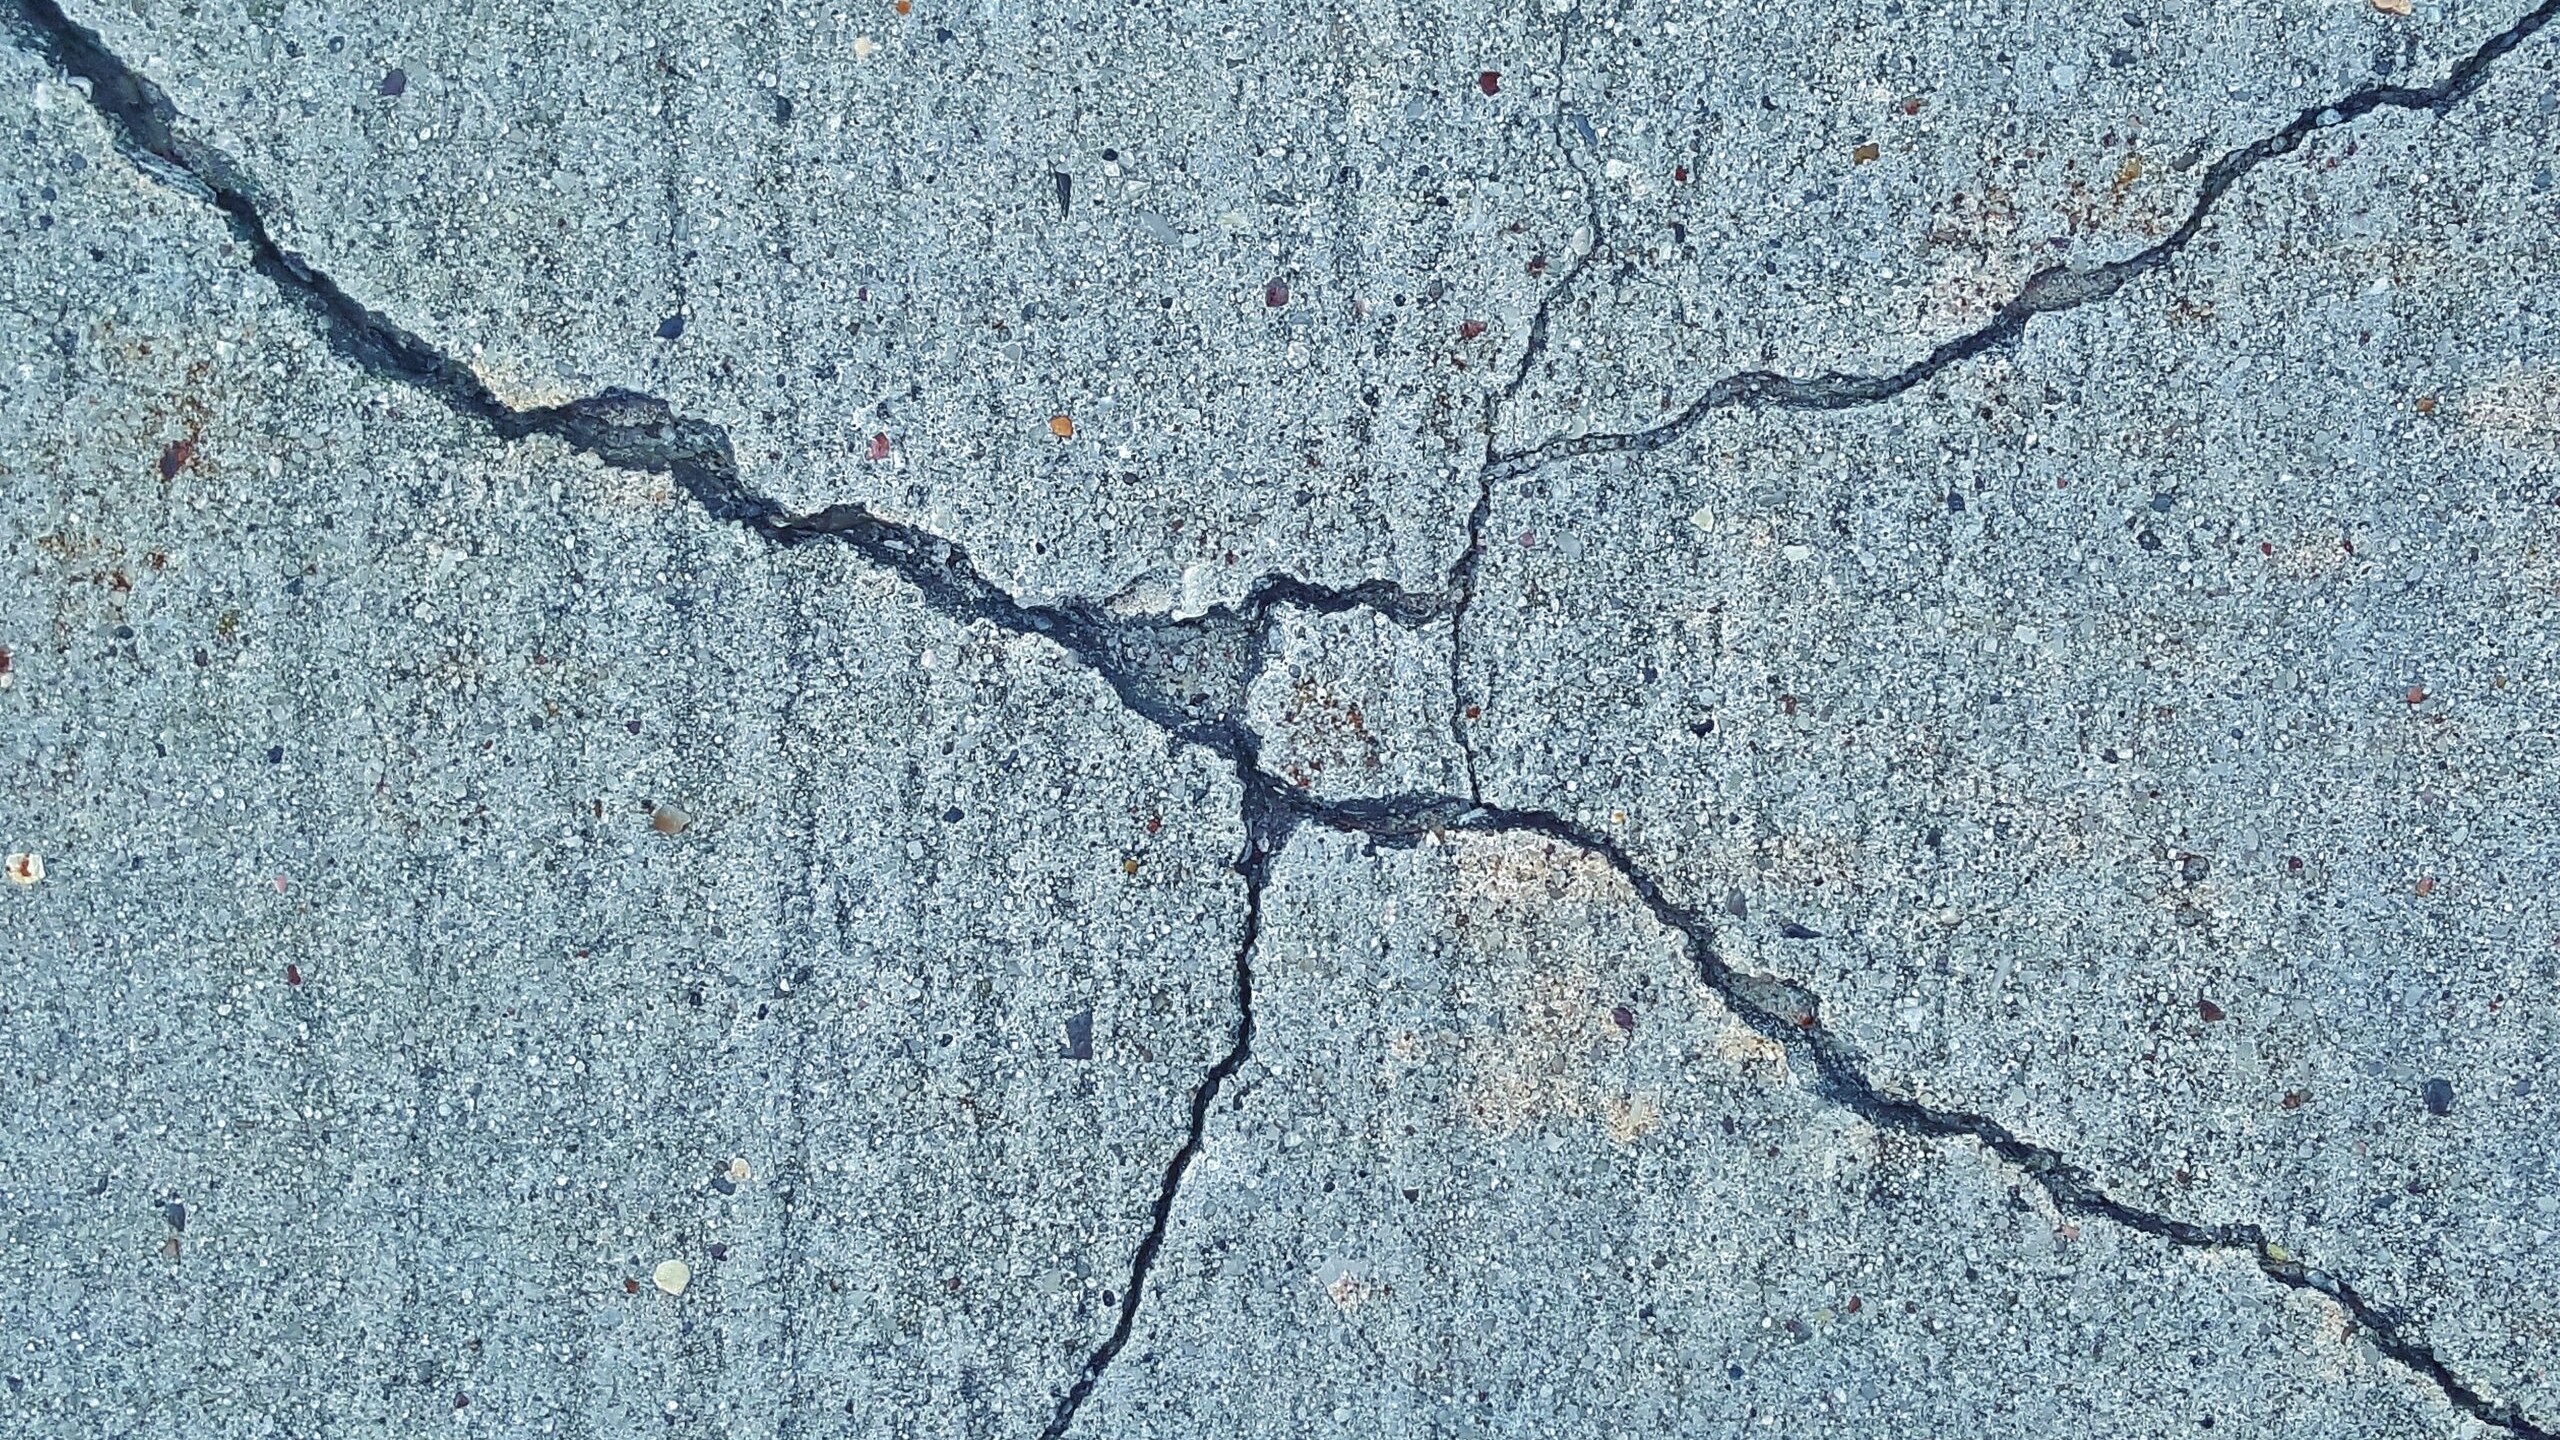 В Дагестане утром было зафиксировано землетрясение магнитудой 5 баллов